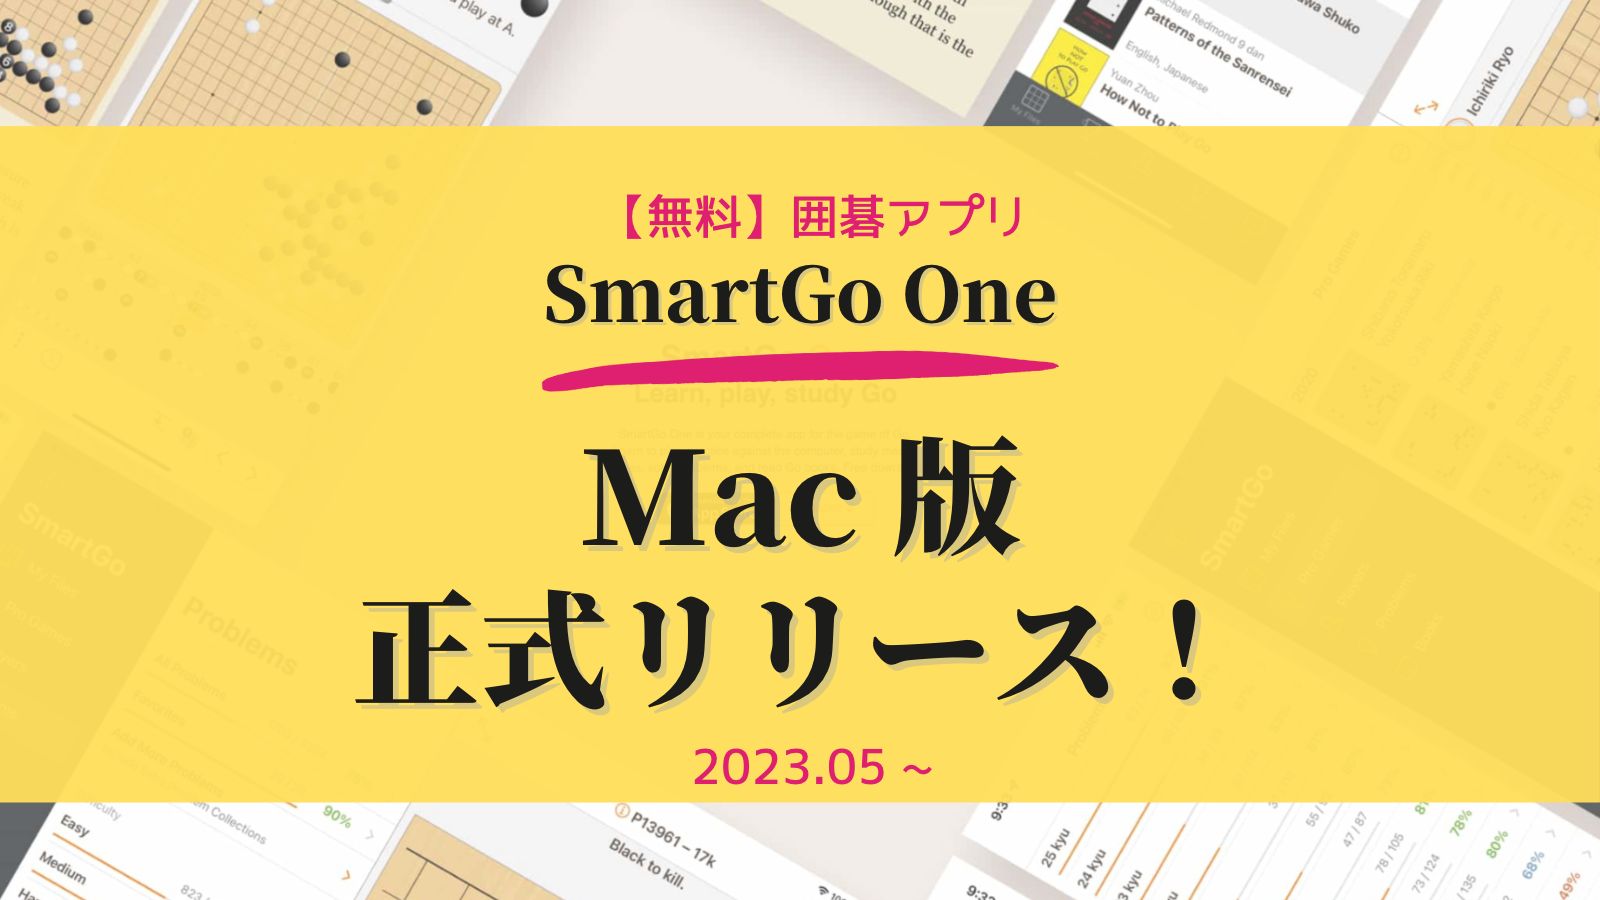 SmartGo One の Mac 版が正式リリースされました